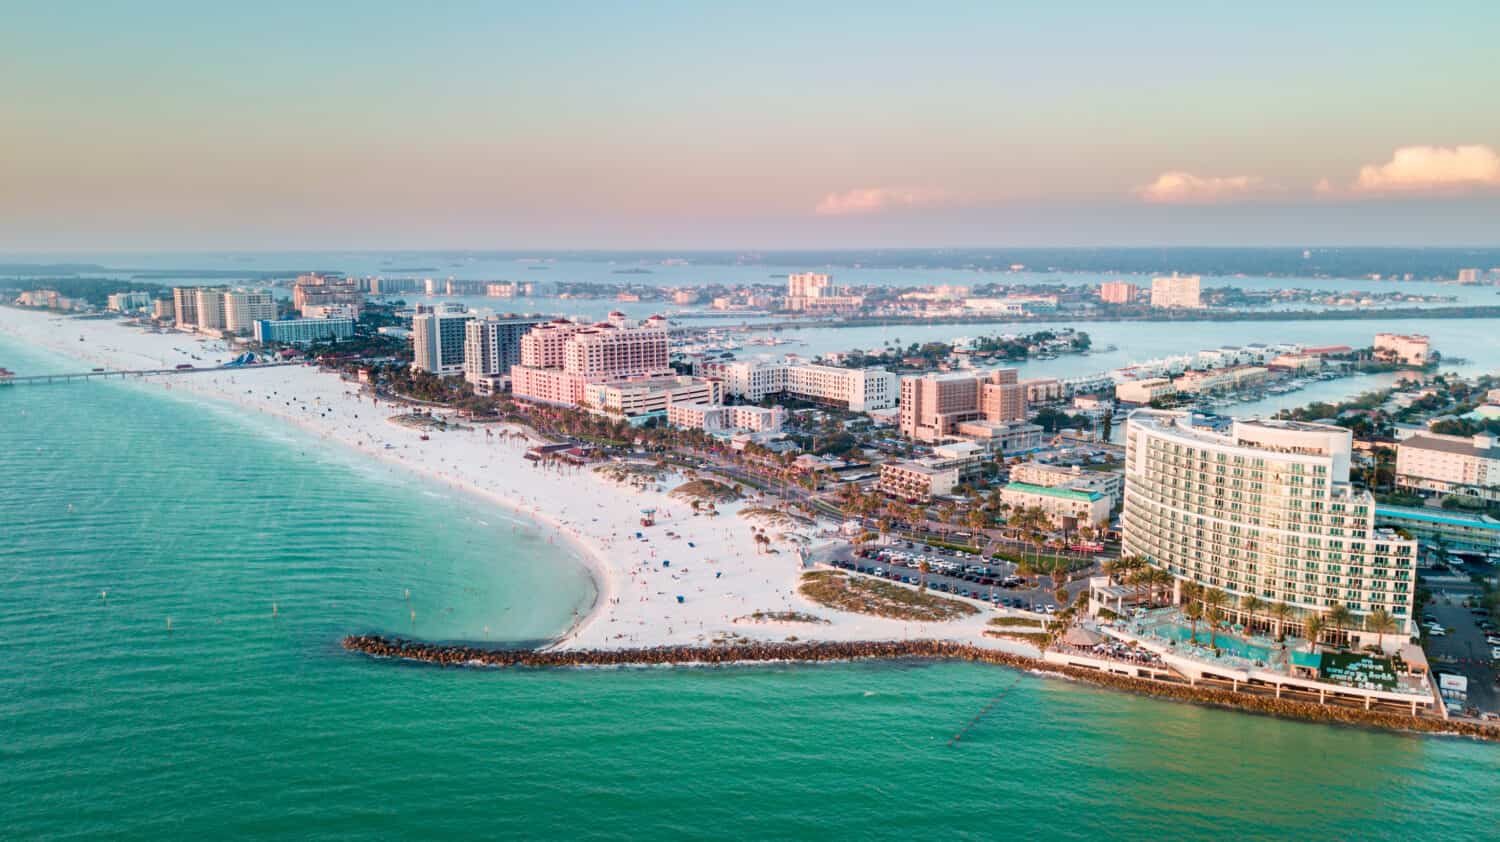 Panorama della città Clearwater Beach FL.  Vacanze estive in Florida.  Bella vista su hotel e resort sull'isola.  Colore blu dell'acqua dell'oceano.  Costa americana o costa Golfo del Messico.  Cielo dopo il tramonto.